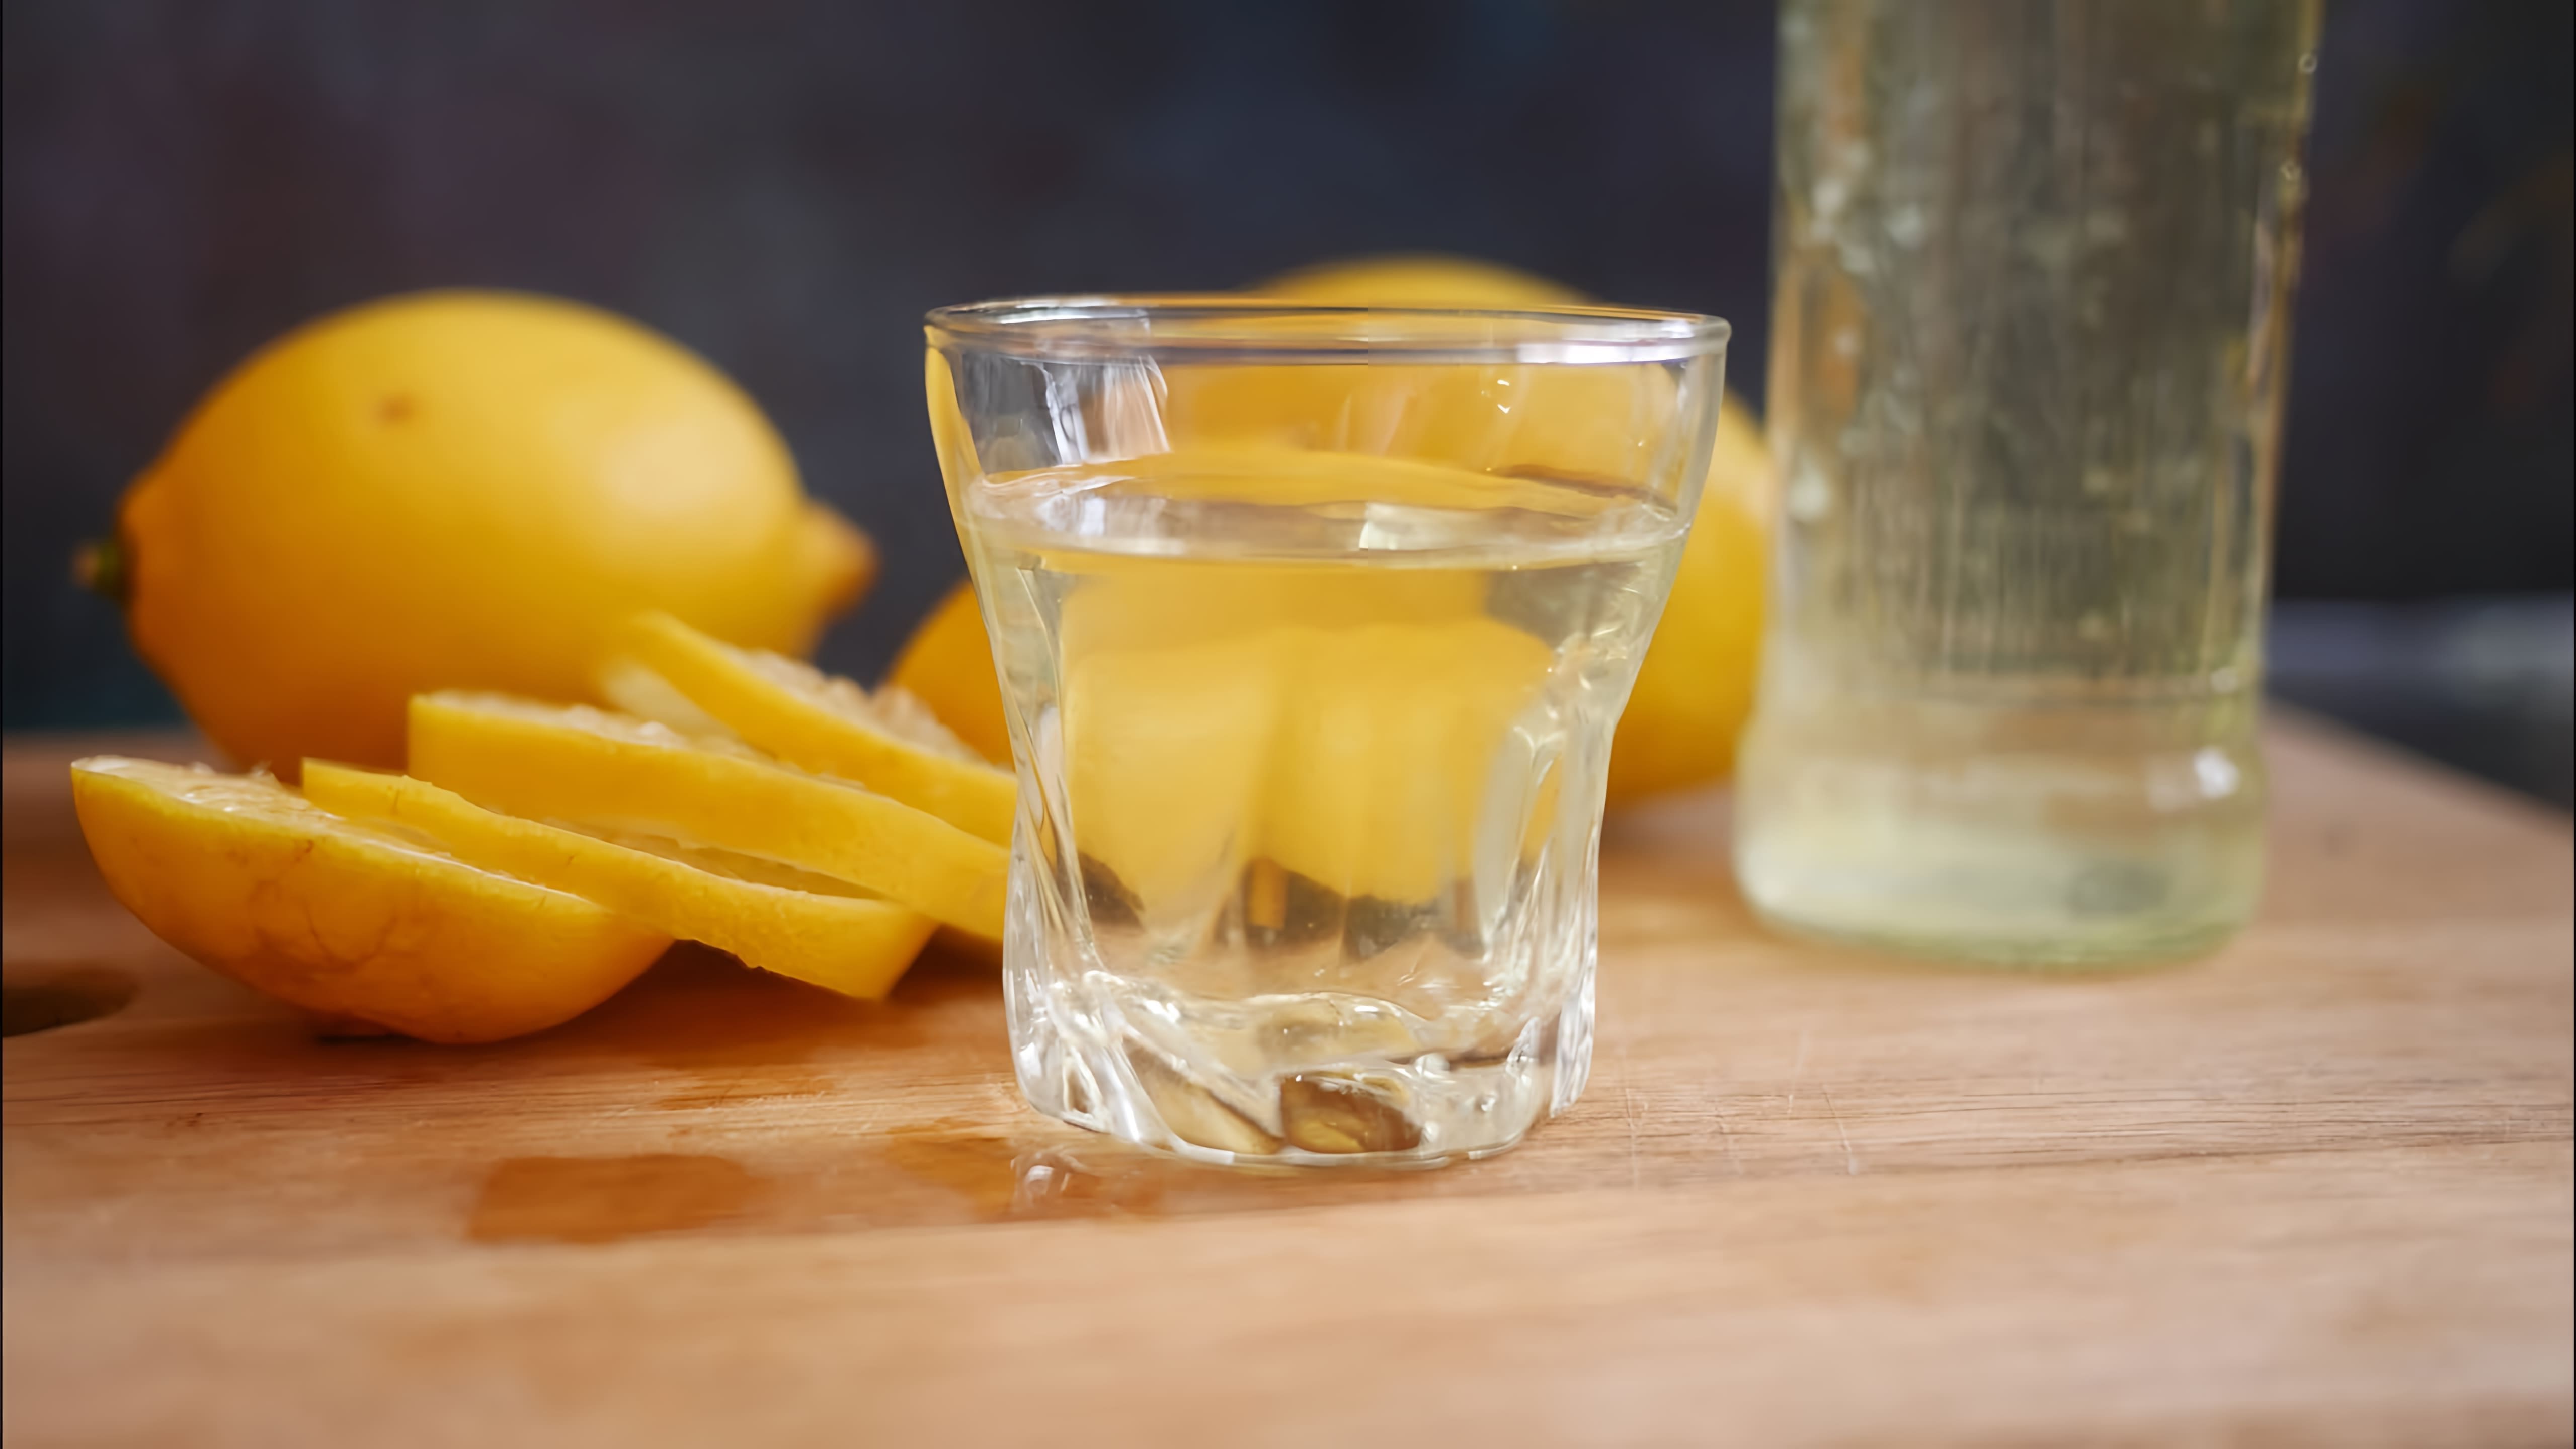 В этом видео демонстрируется процесс приготовления домашней лимонной водки